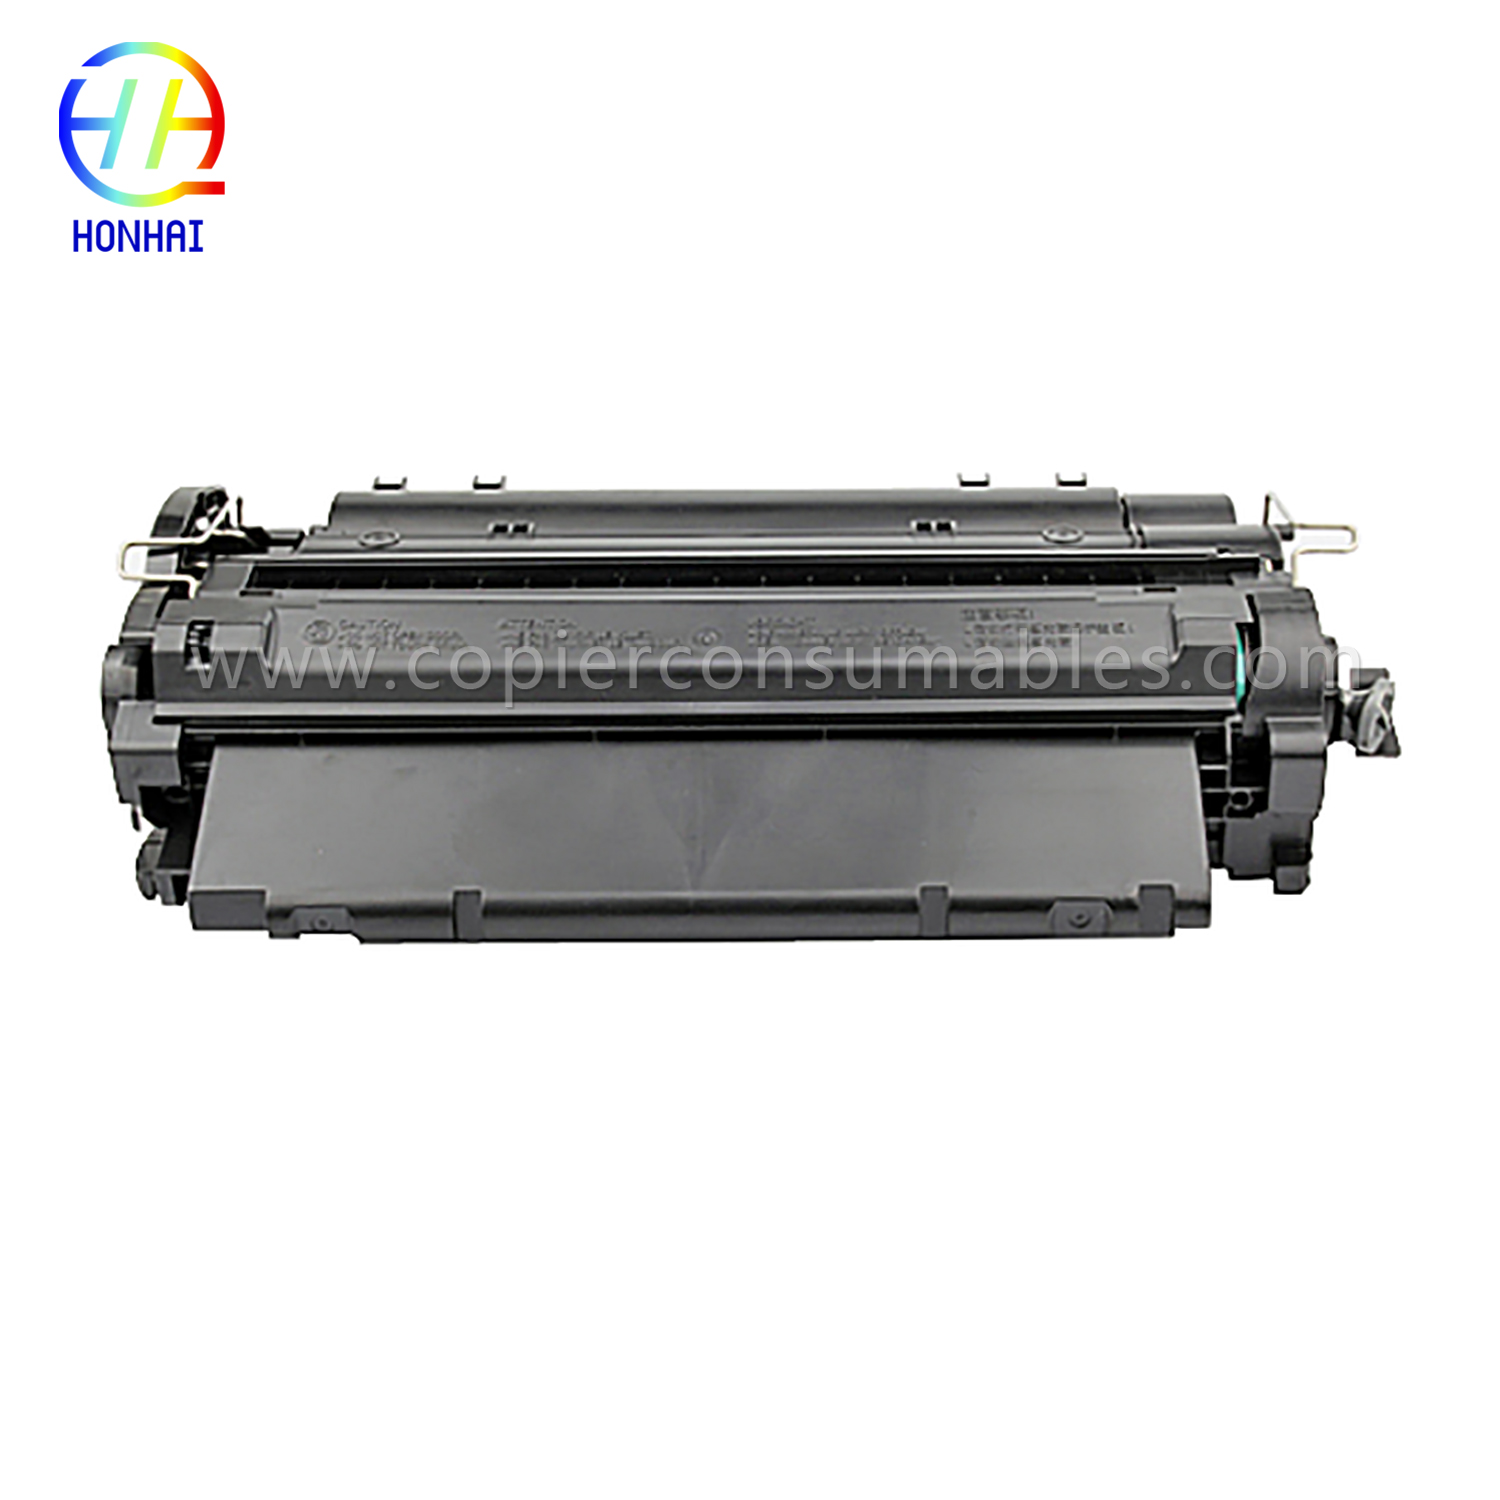 کلر ٹونر کارٹریجز HP LaserJet LaserJet Pro MFP M521dn Enterprise P3015 (CE255X) -1 (2) 拷贝